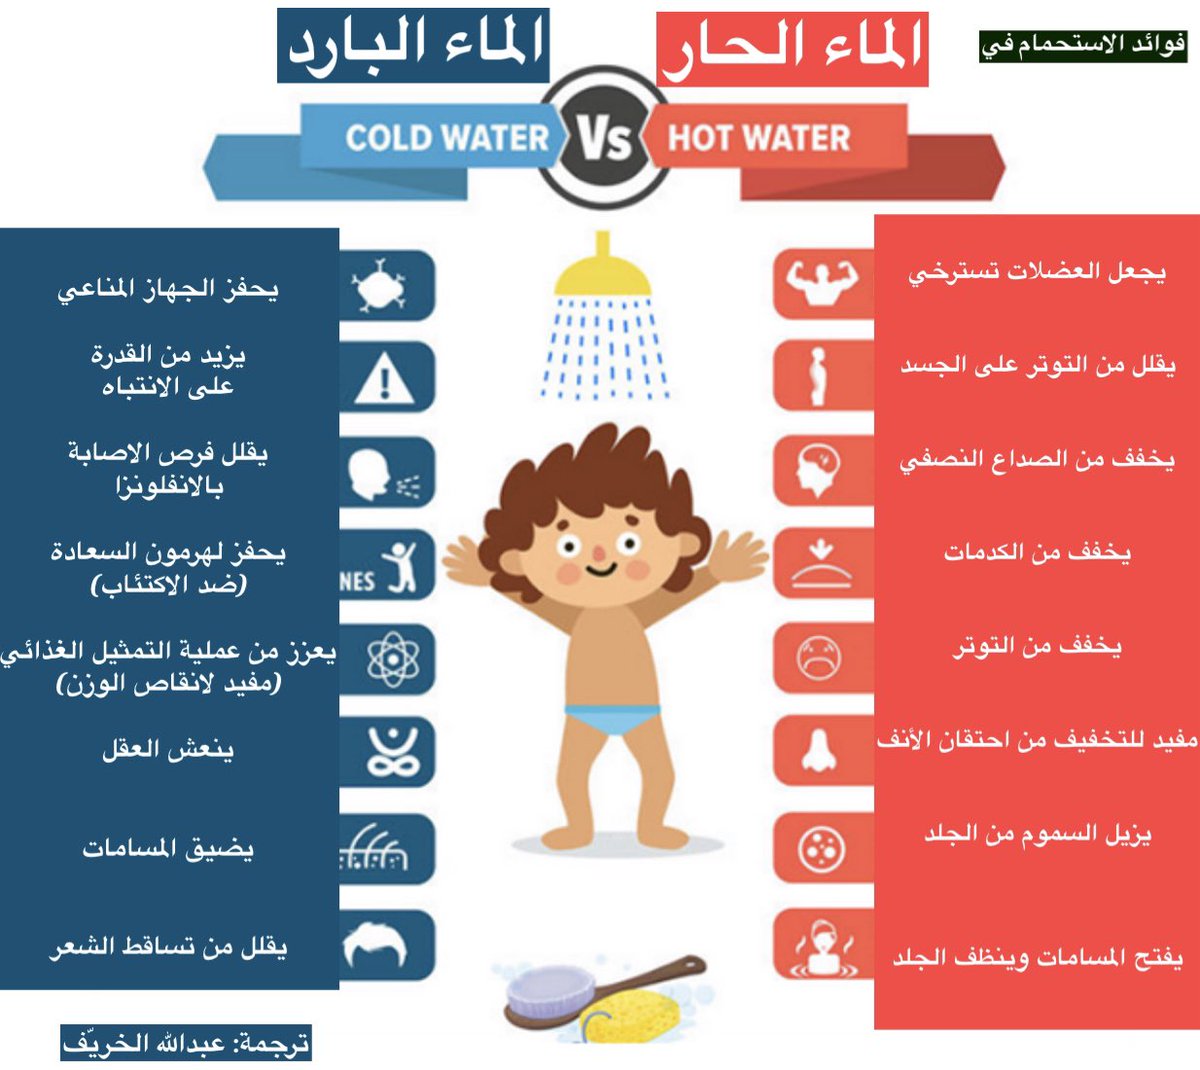 فوائد الاستحمام في الماء الحار والبارد .. أيّهم تفضّل بصراحة؟ 
 وعلى فكرة أول مرة أترجم انفوجرافيك💪🏼